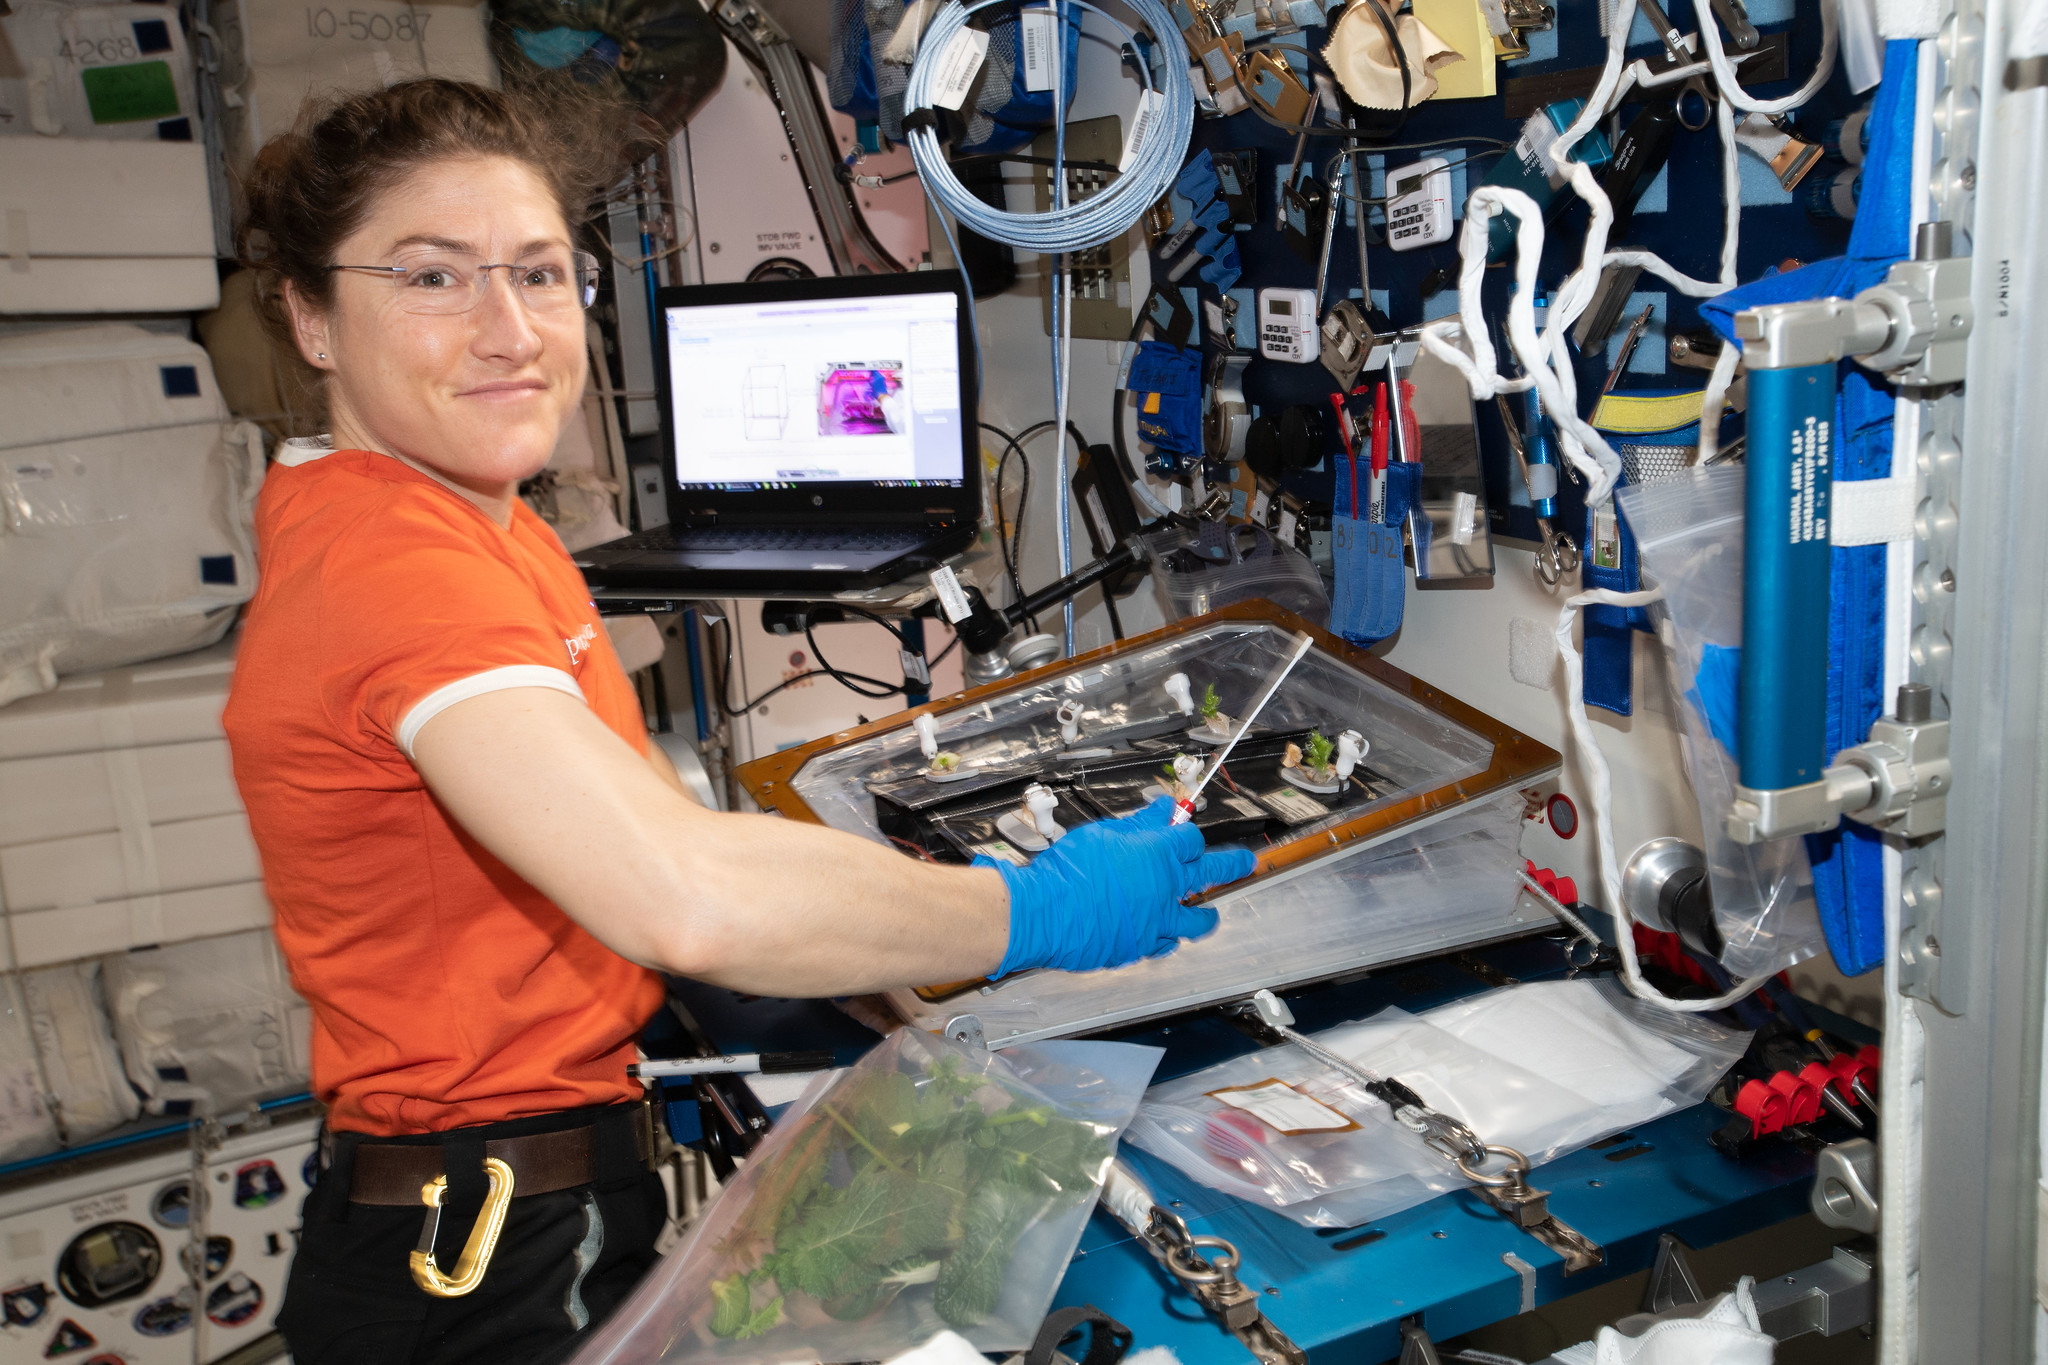 L'astronaute américaine Christina Koch a rejoint l'ISS le 14 mars 2019 pour une mission qui vient d'être prolongée à février 2020, soit environ onze mois. © Nasa